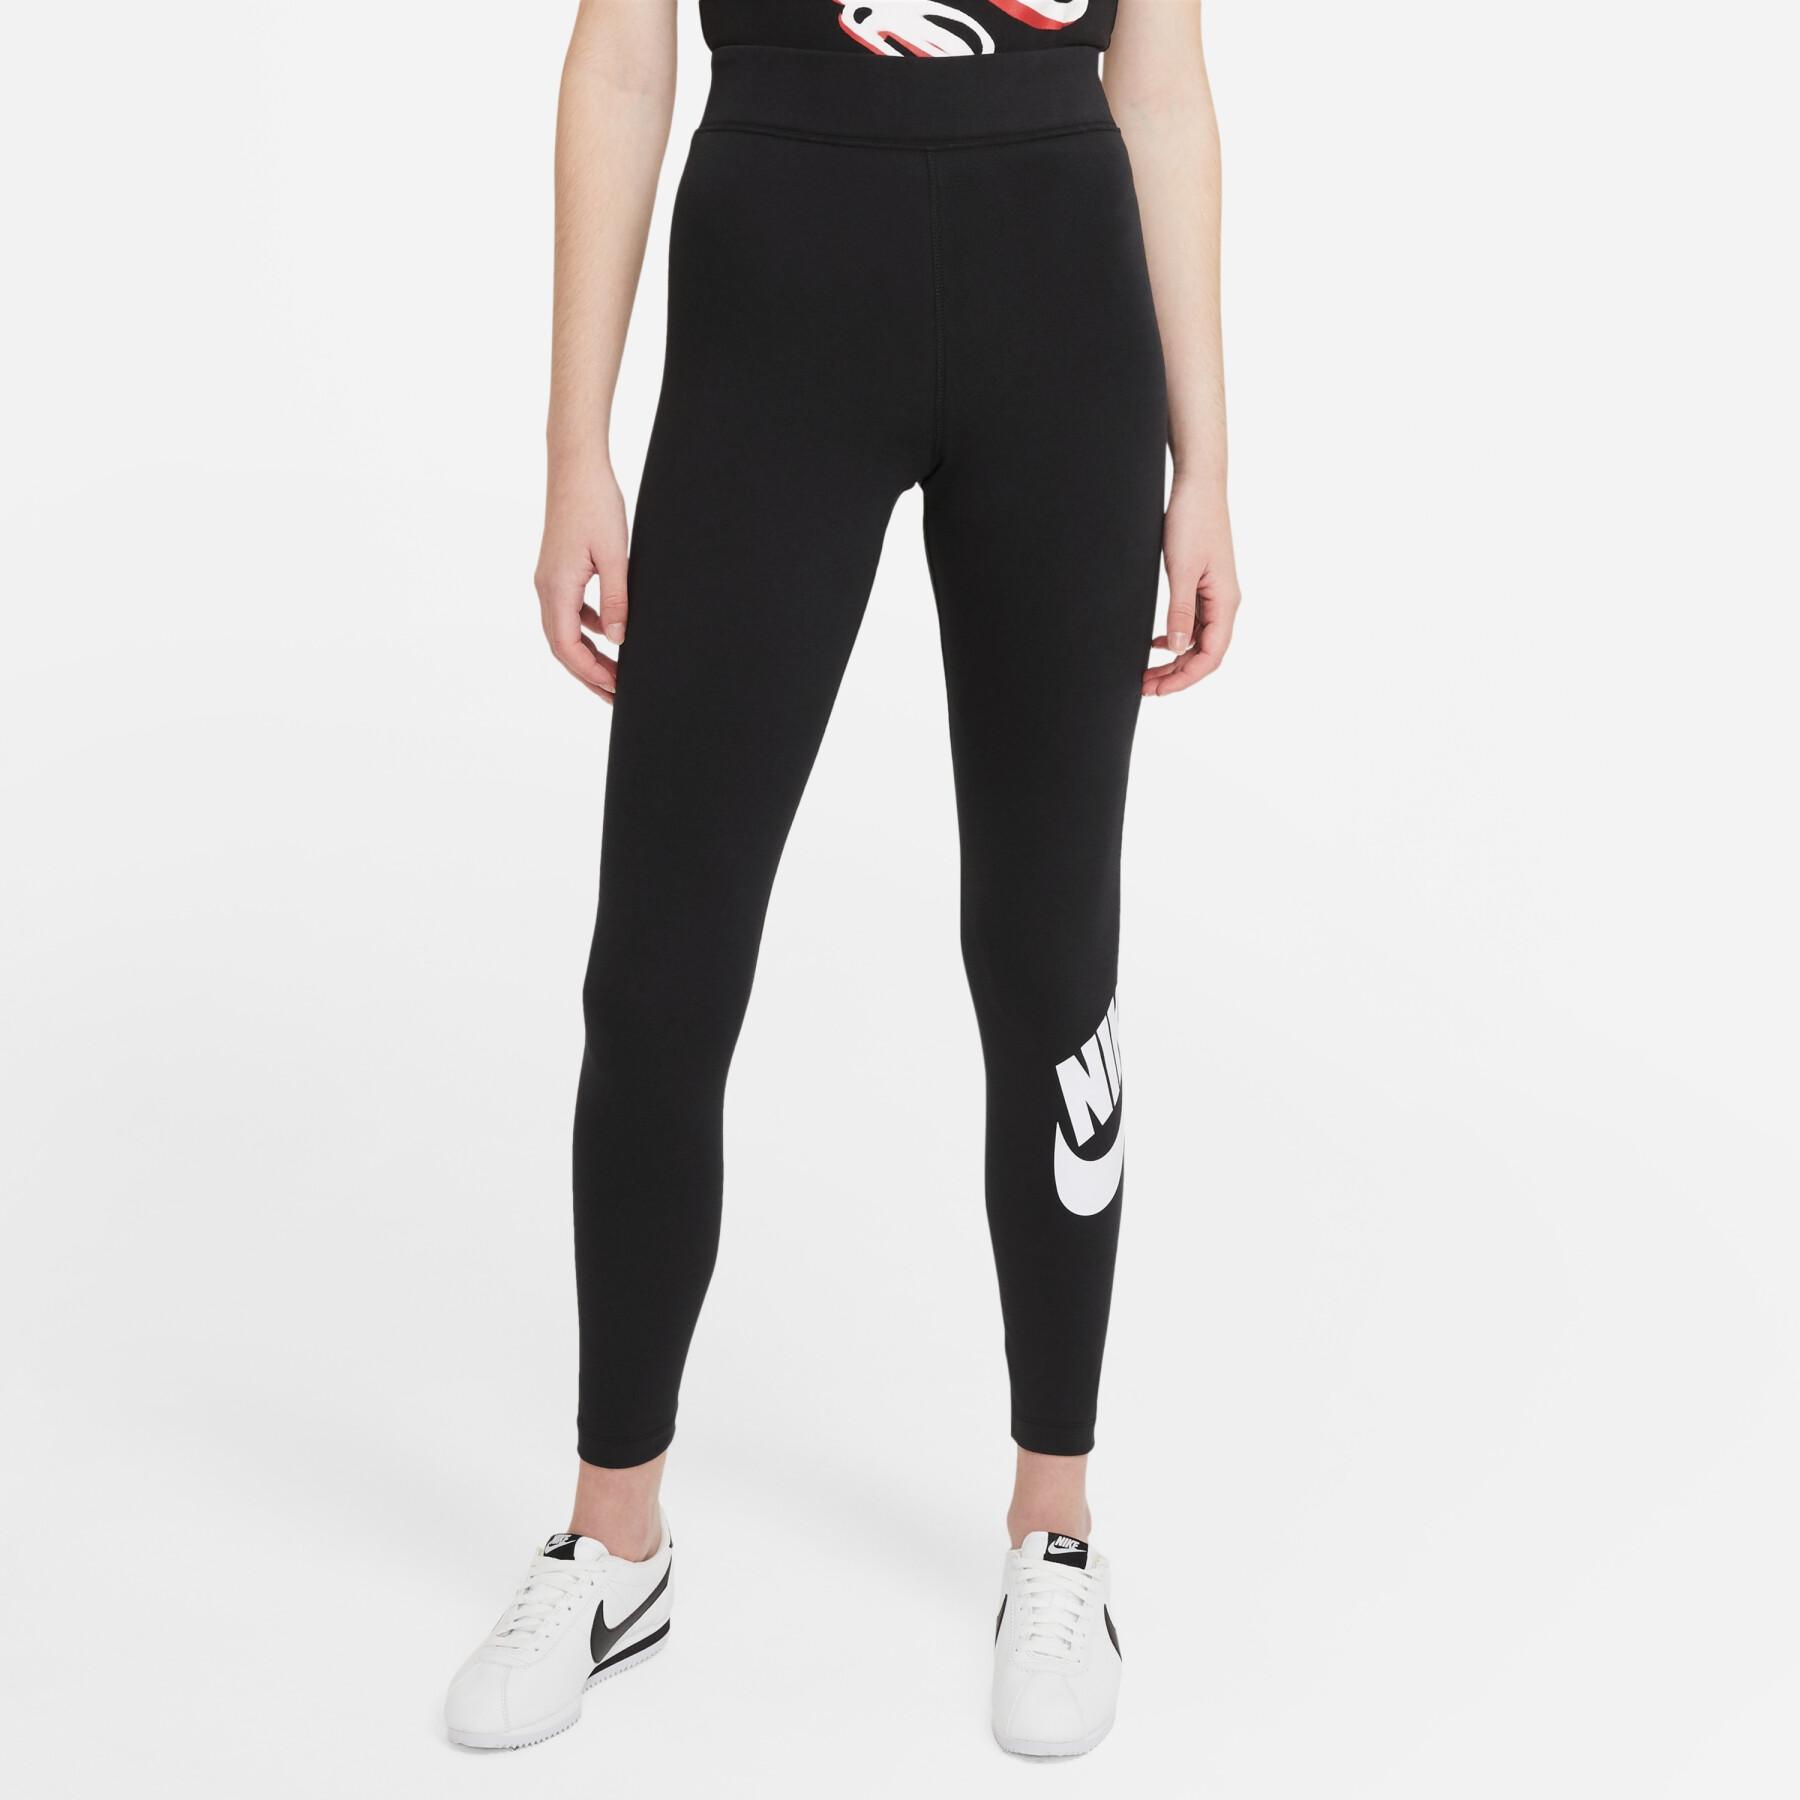 Legginsy damskie Nike sportswear essential